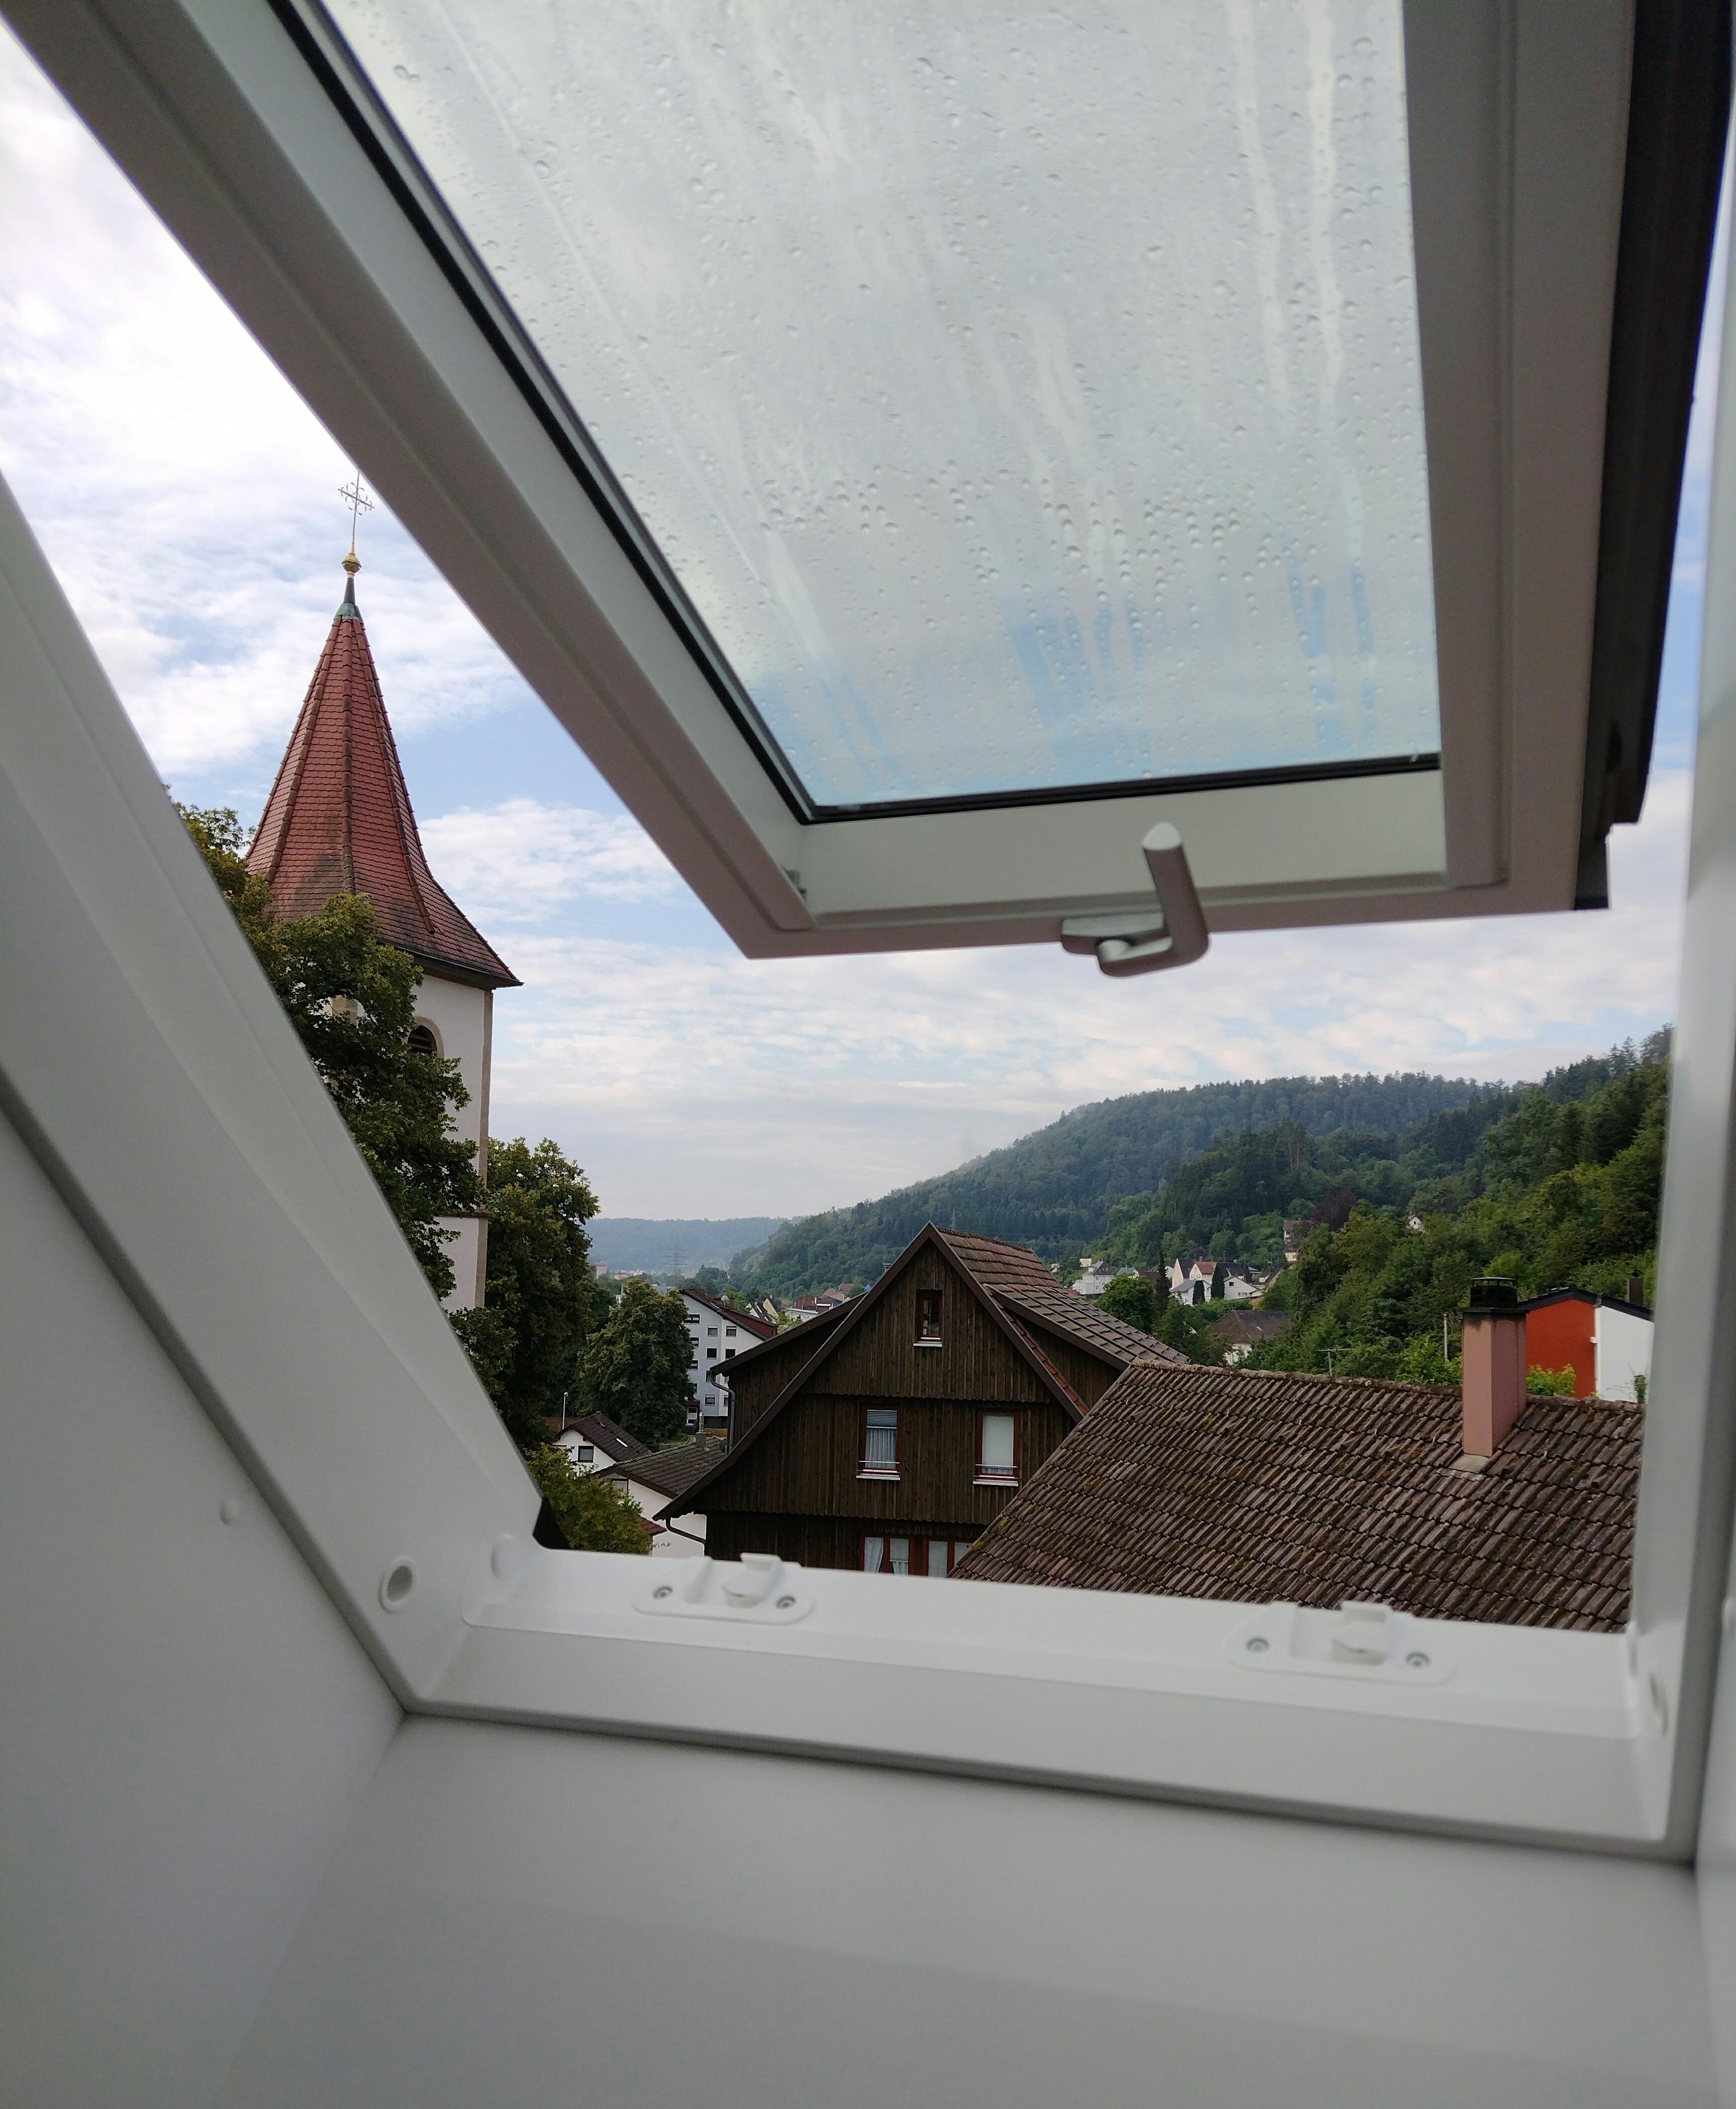 Dachfenster nachher. Neu, weiss, wirkt schön hell, auch wenn es regnet...
#dachfenster #kunstsoff #dachgeschosswohnung 